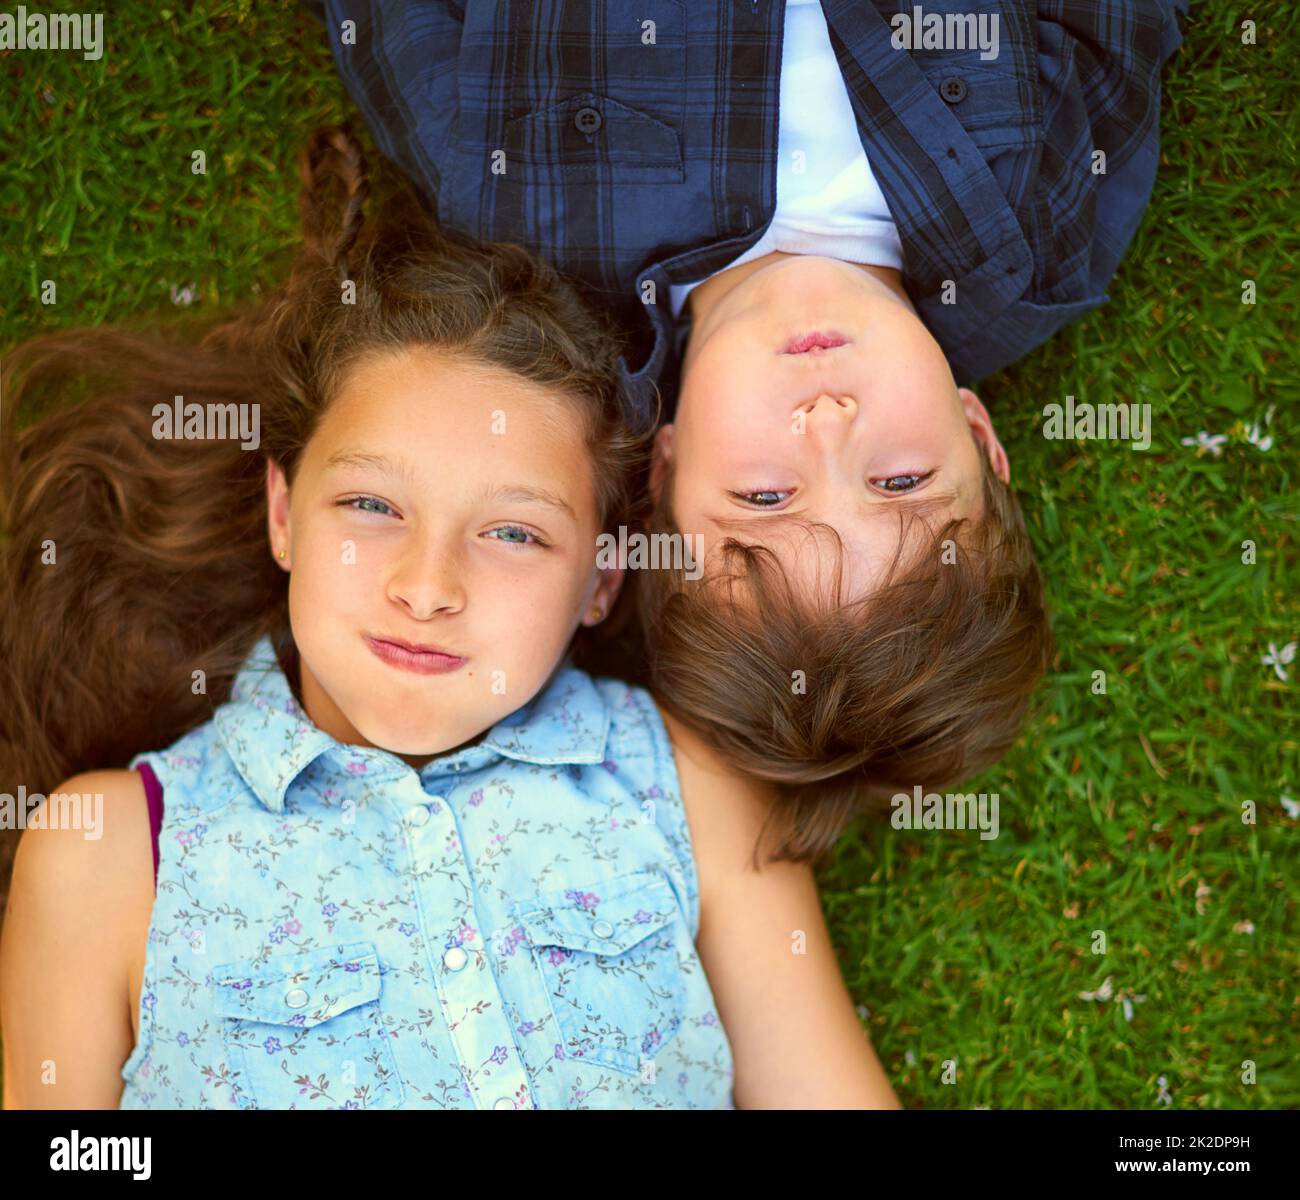 Trattenere il respiro. Colpo ad angolo alto di un fratello e di una sorella giovani che trattengono il respiro mentre si trovano sull'erba all'esterno. Foto Stock